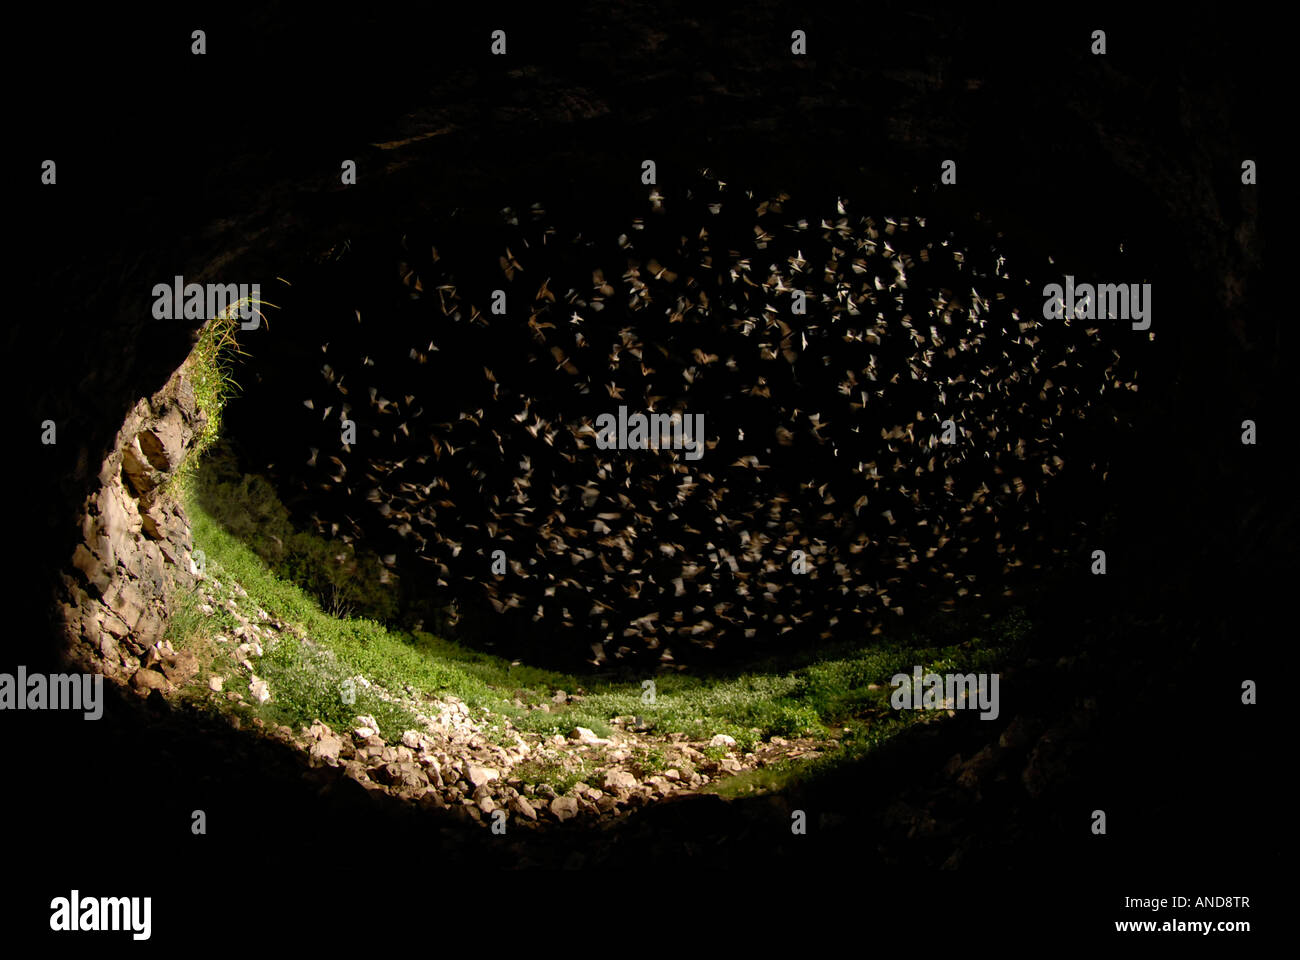 Libera messicano-tailed bat (Tadarida brasiliensis) emergente dalla grotta (lunga esposizione) per mostrare sciamare pattern Foto Stock